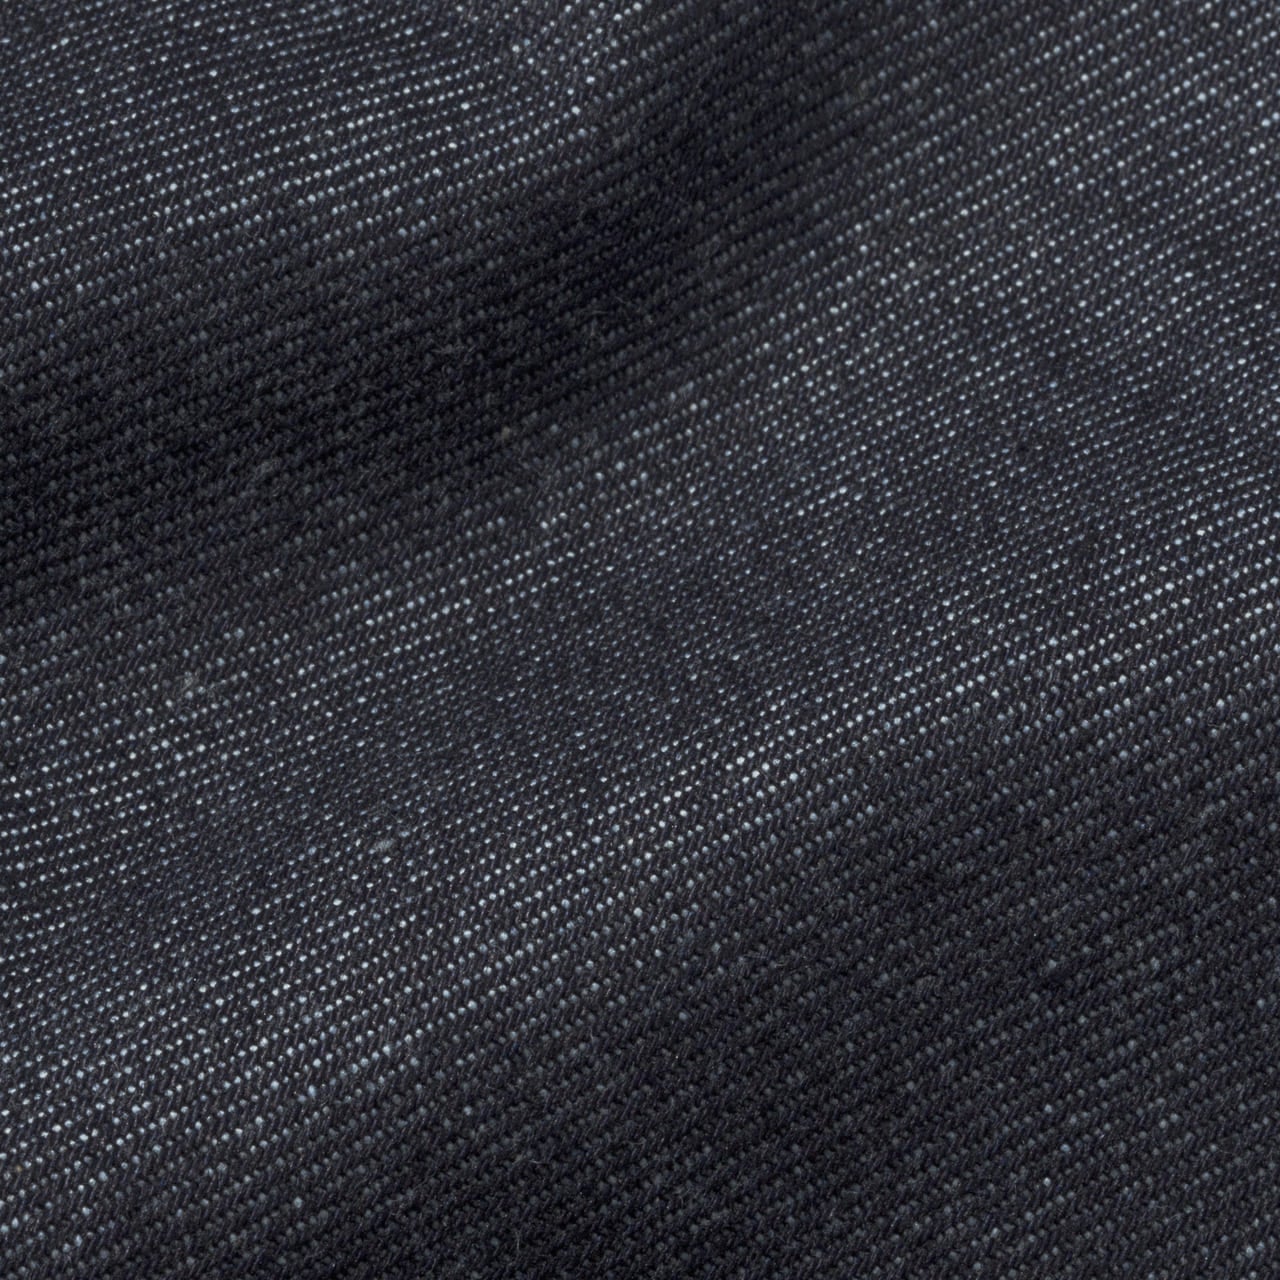 ユニクロのセルビッジレギュラーフィット ストレートジーンズ（丈標準78.5cm）のデニムの素材感